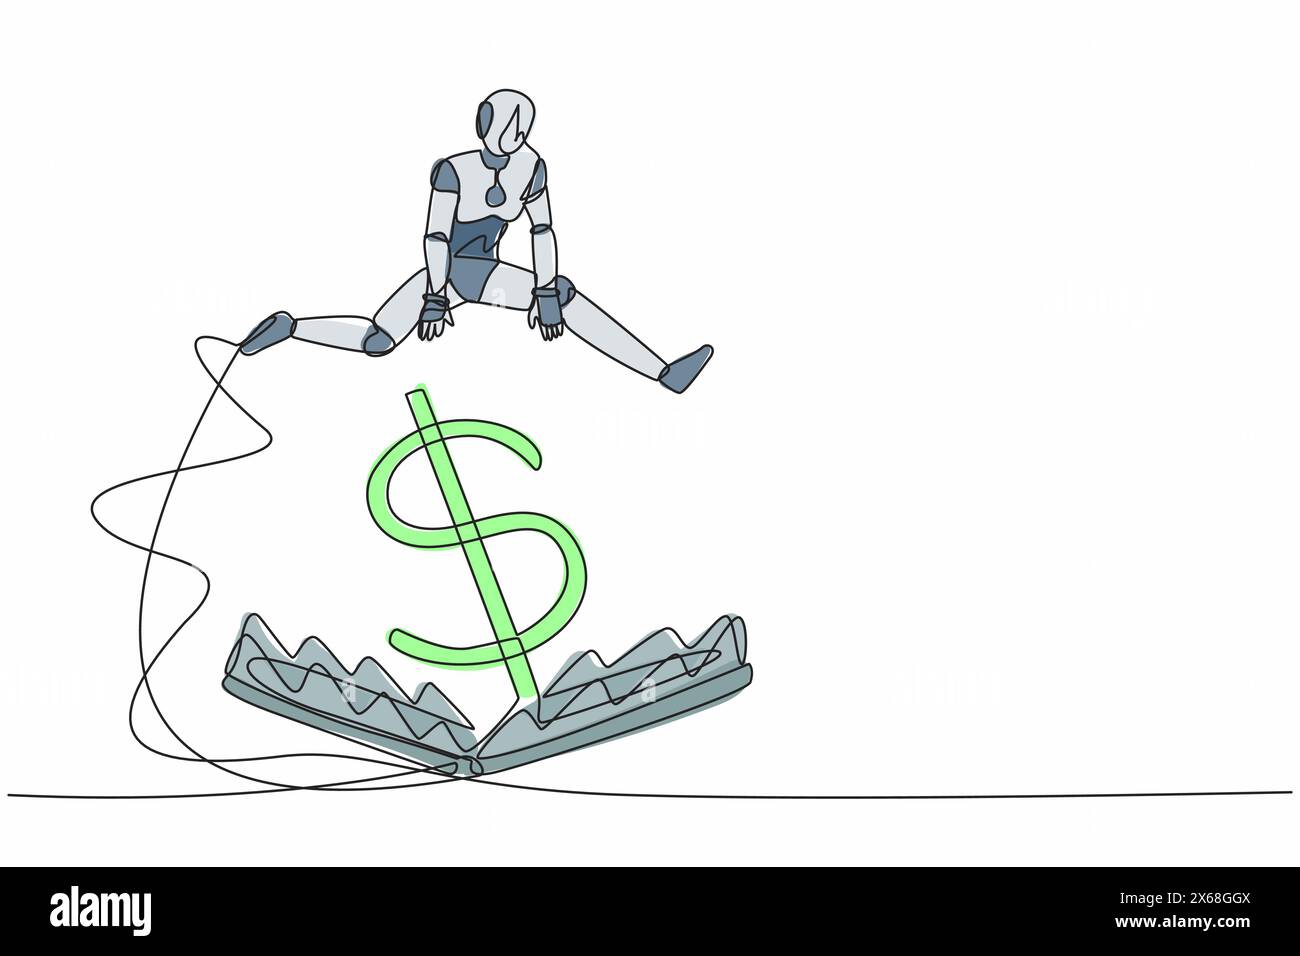 Robot de dessin continu d'une ligne sautant au-dessus de l'écueil de l'argent avec le symbole de gros dollar d'argent. Piège à argent financier. Orga cybernétique du futur robot humanoïde Illustration de Vecteur